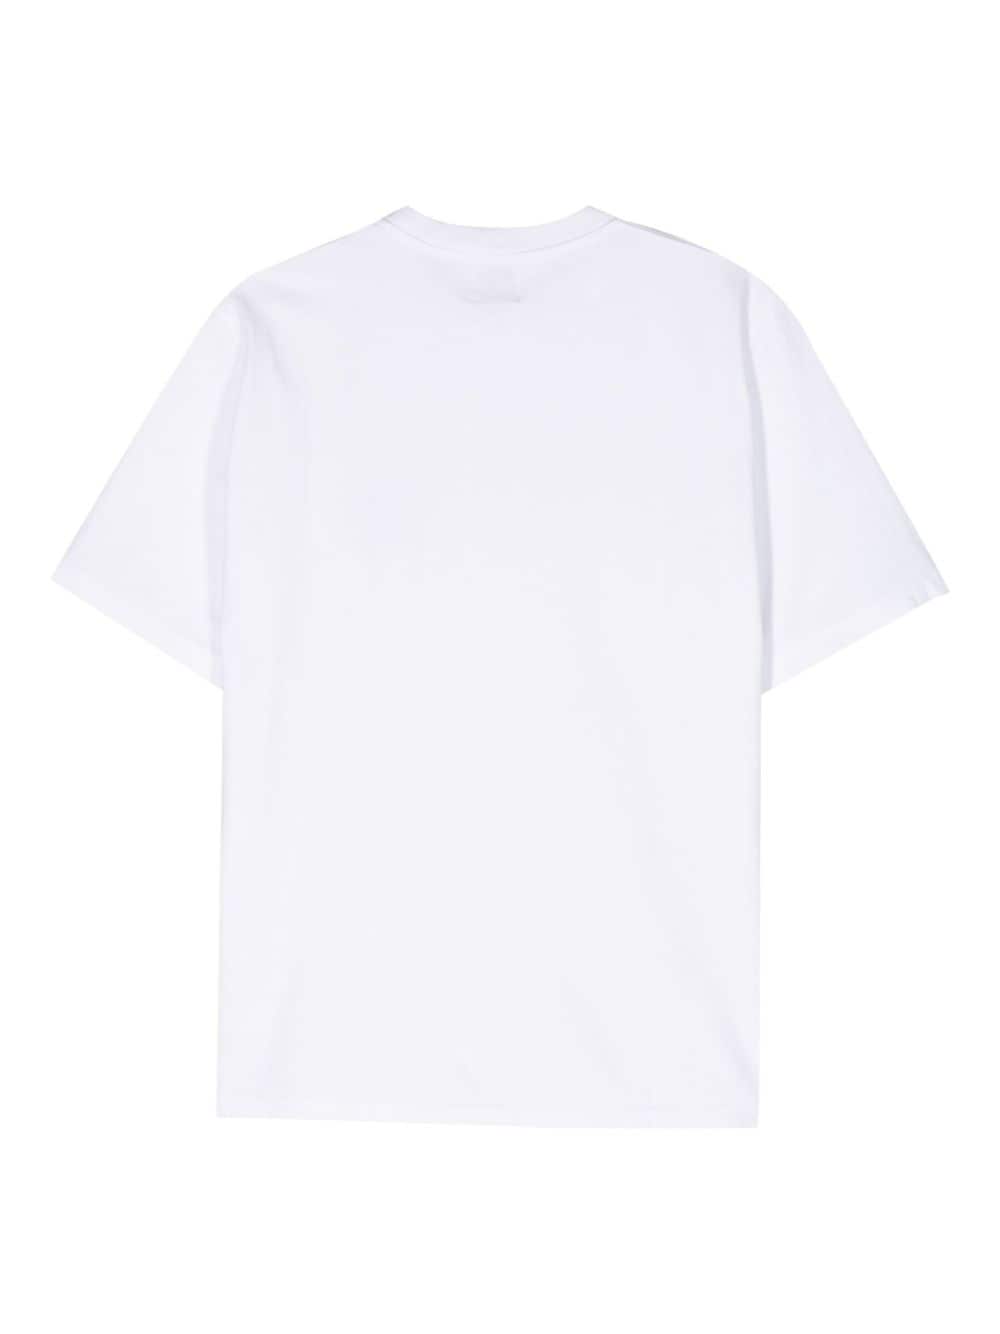 Arte - T-shirt white Heart en coton - Lothaire